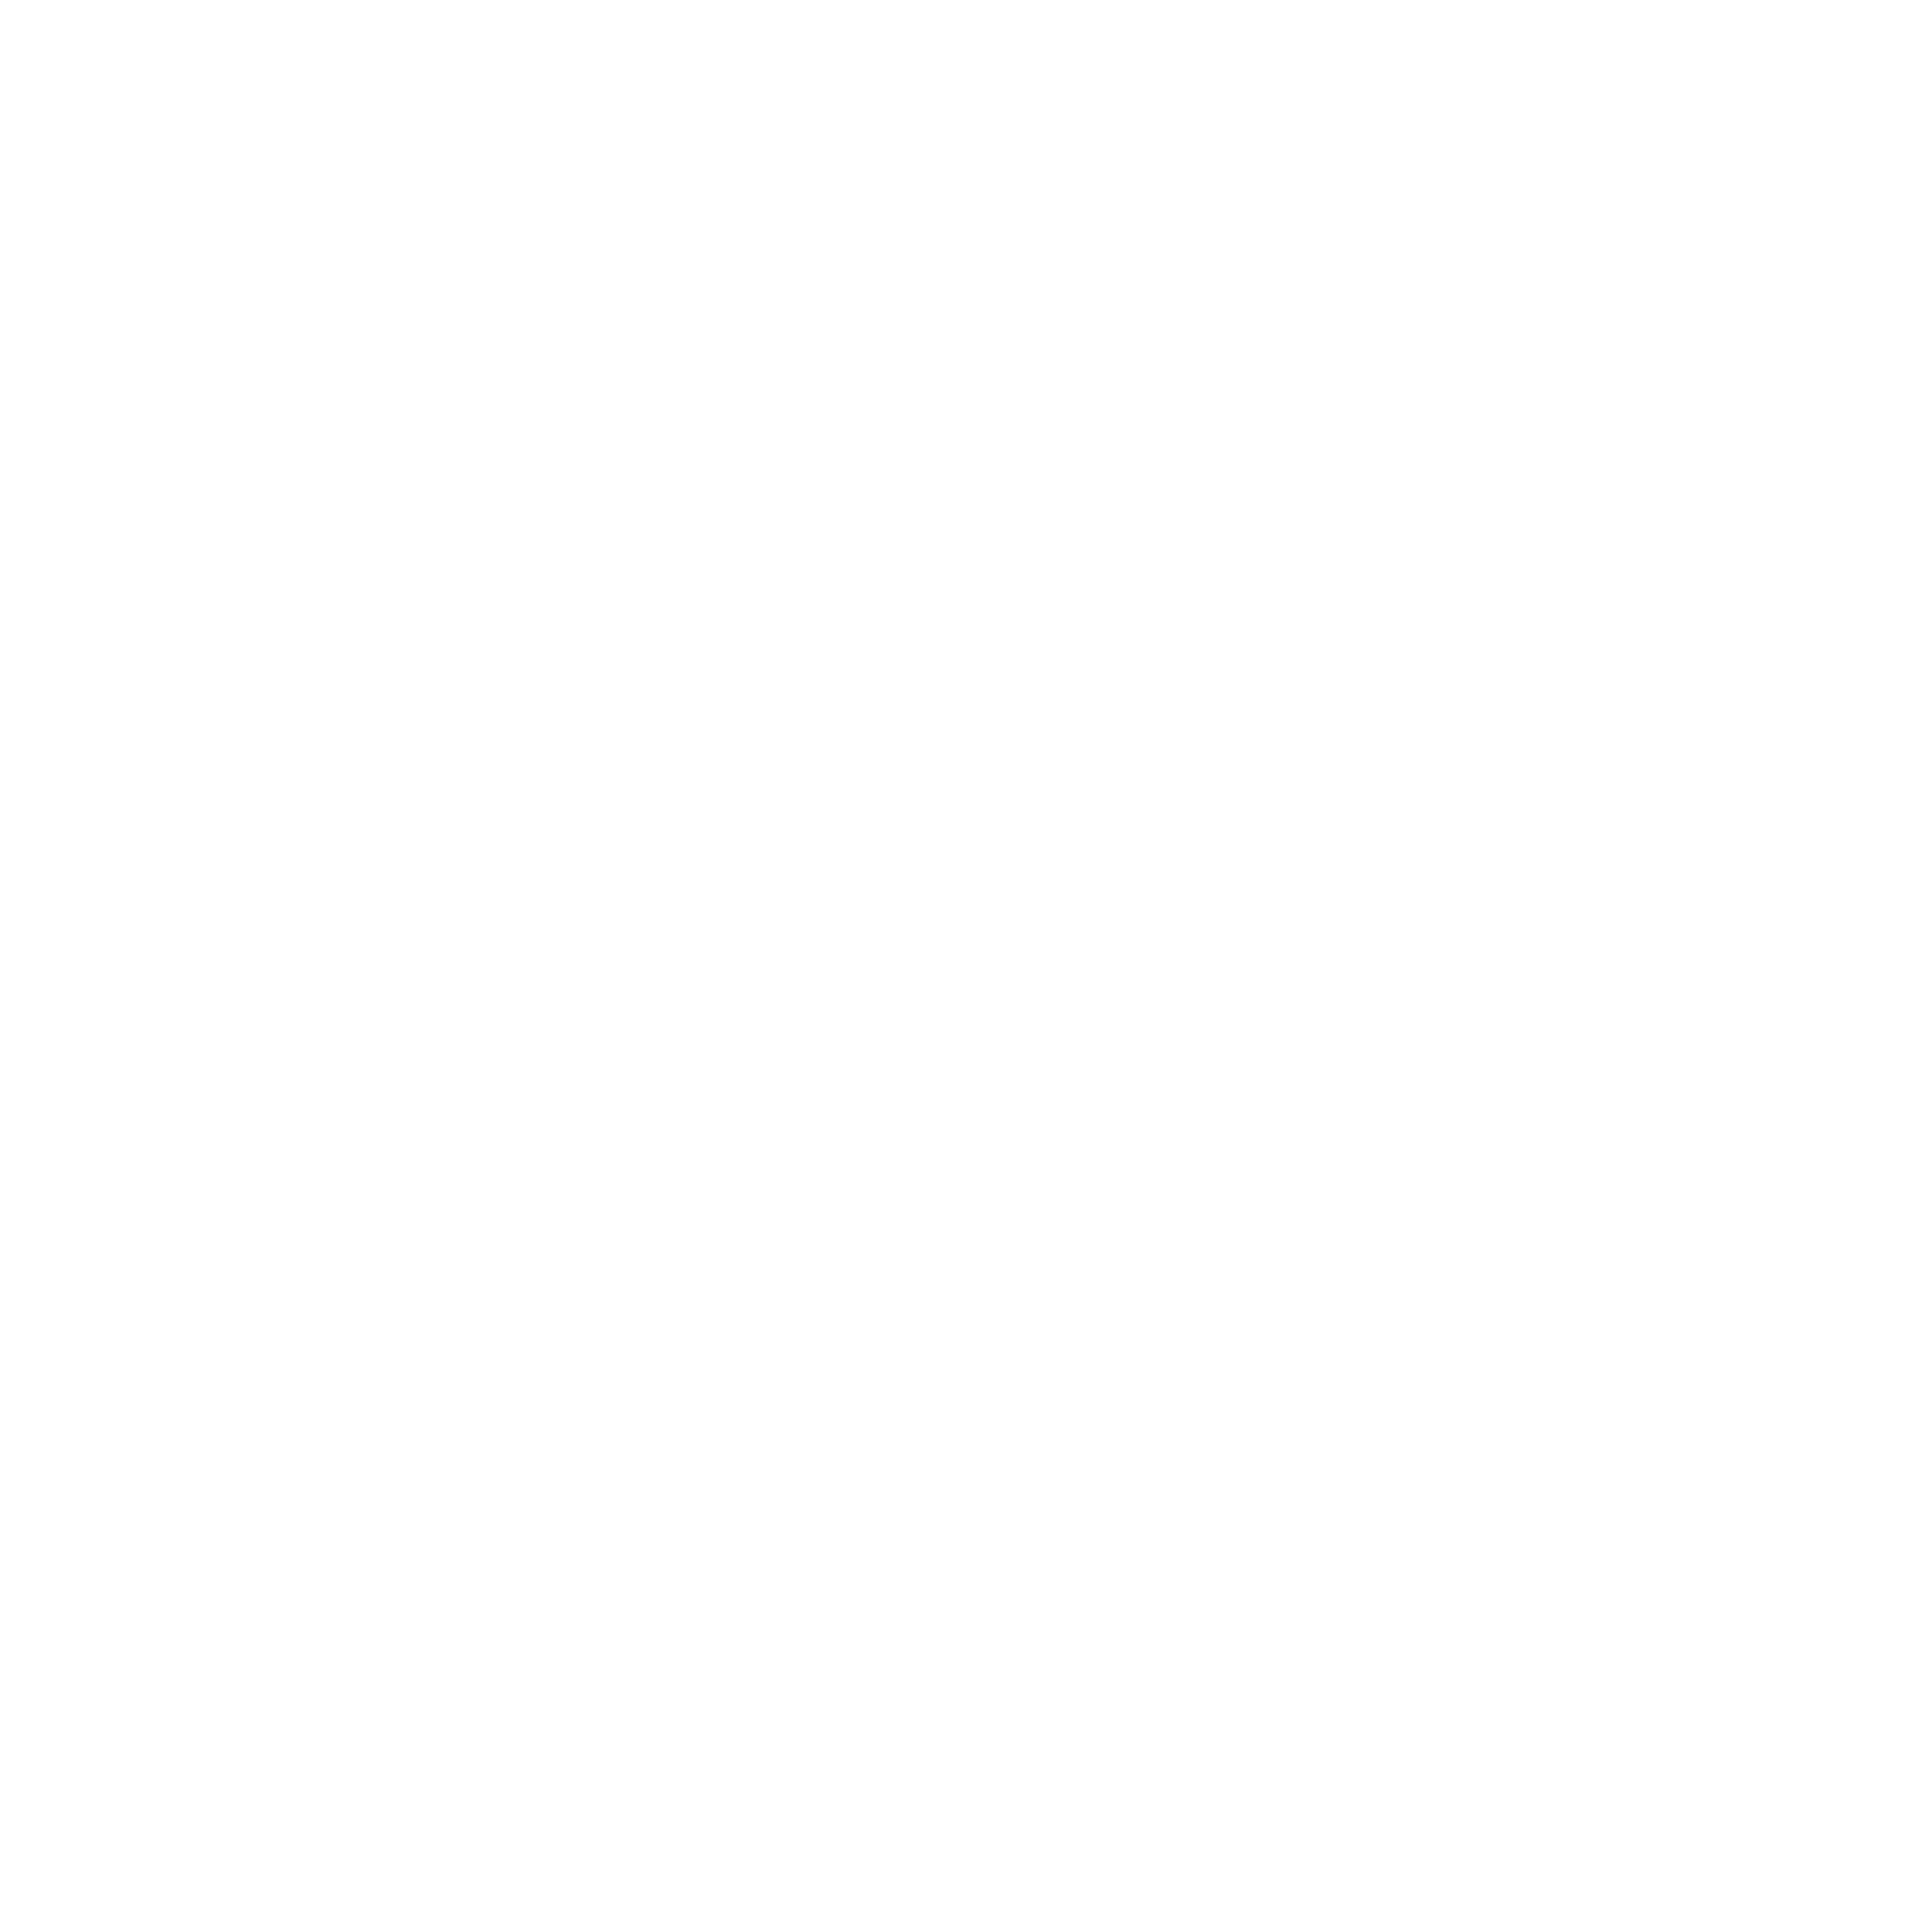 brownmunde.com